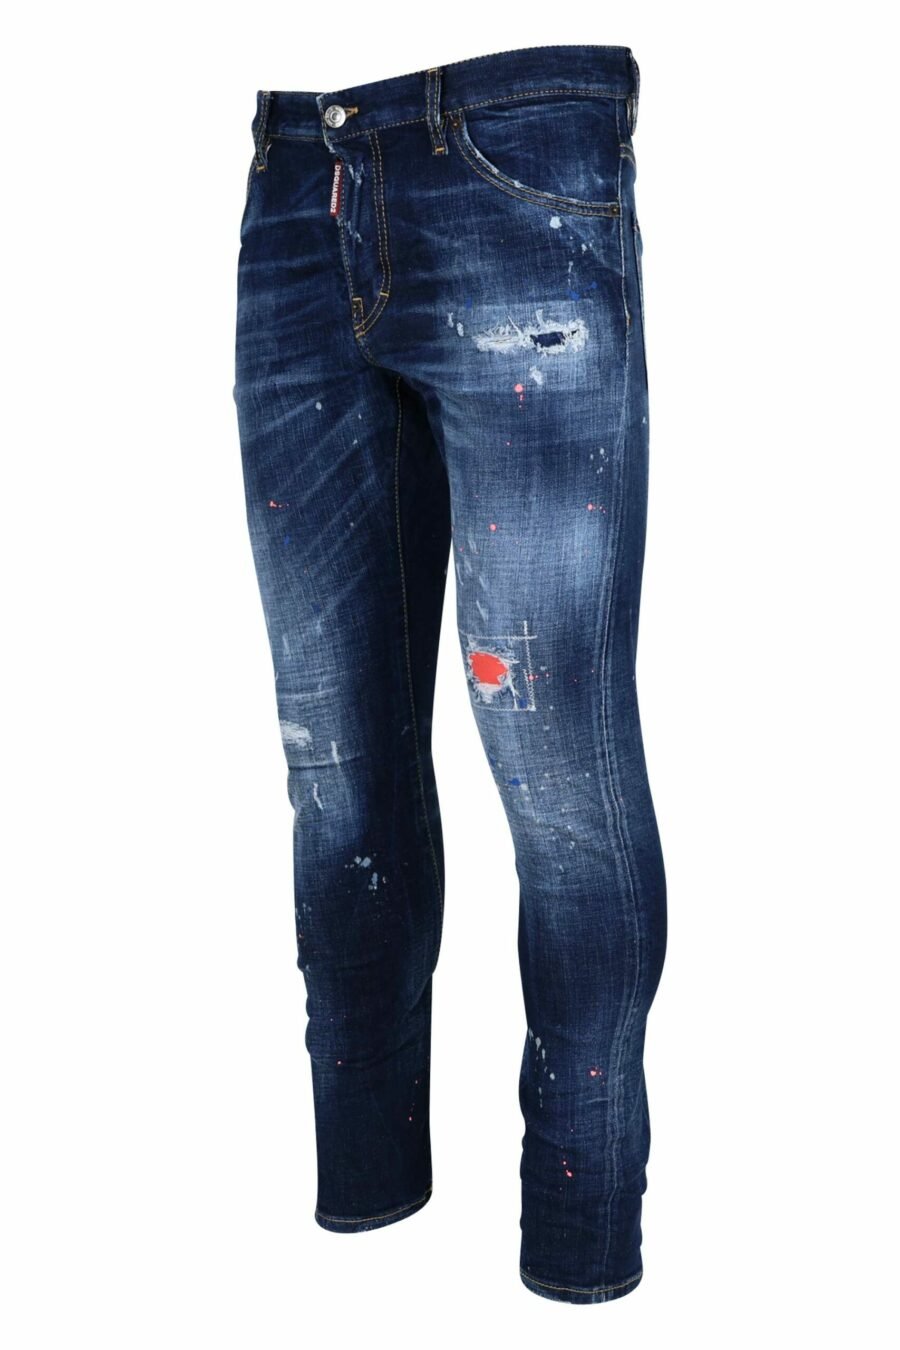 Pantalón vaquero azul "sexy twist jean" desgastado con pintura naranja - 8054148308292 1 scaled